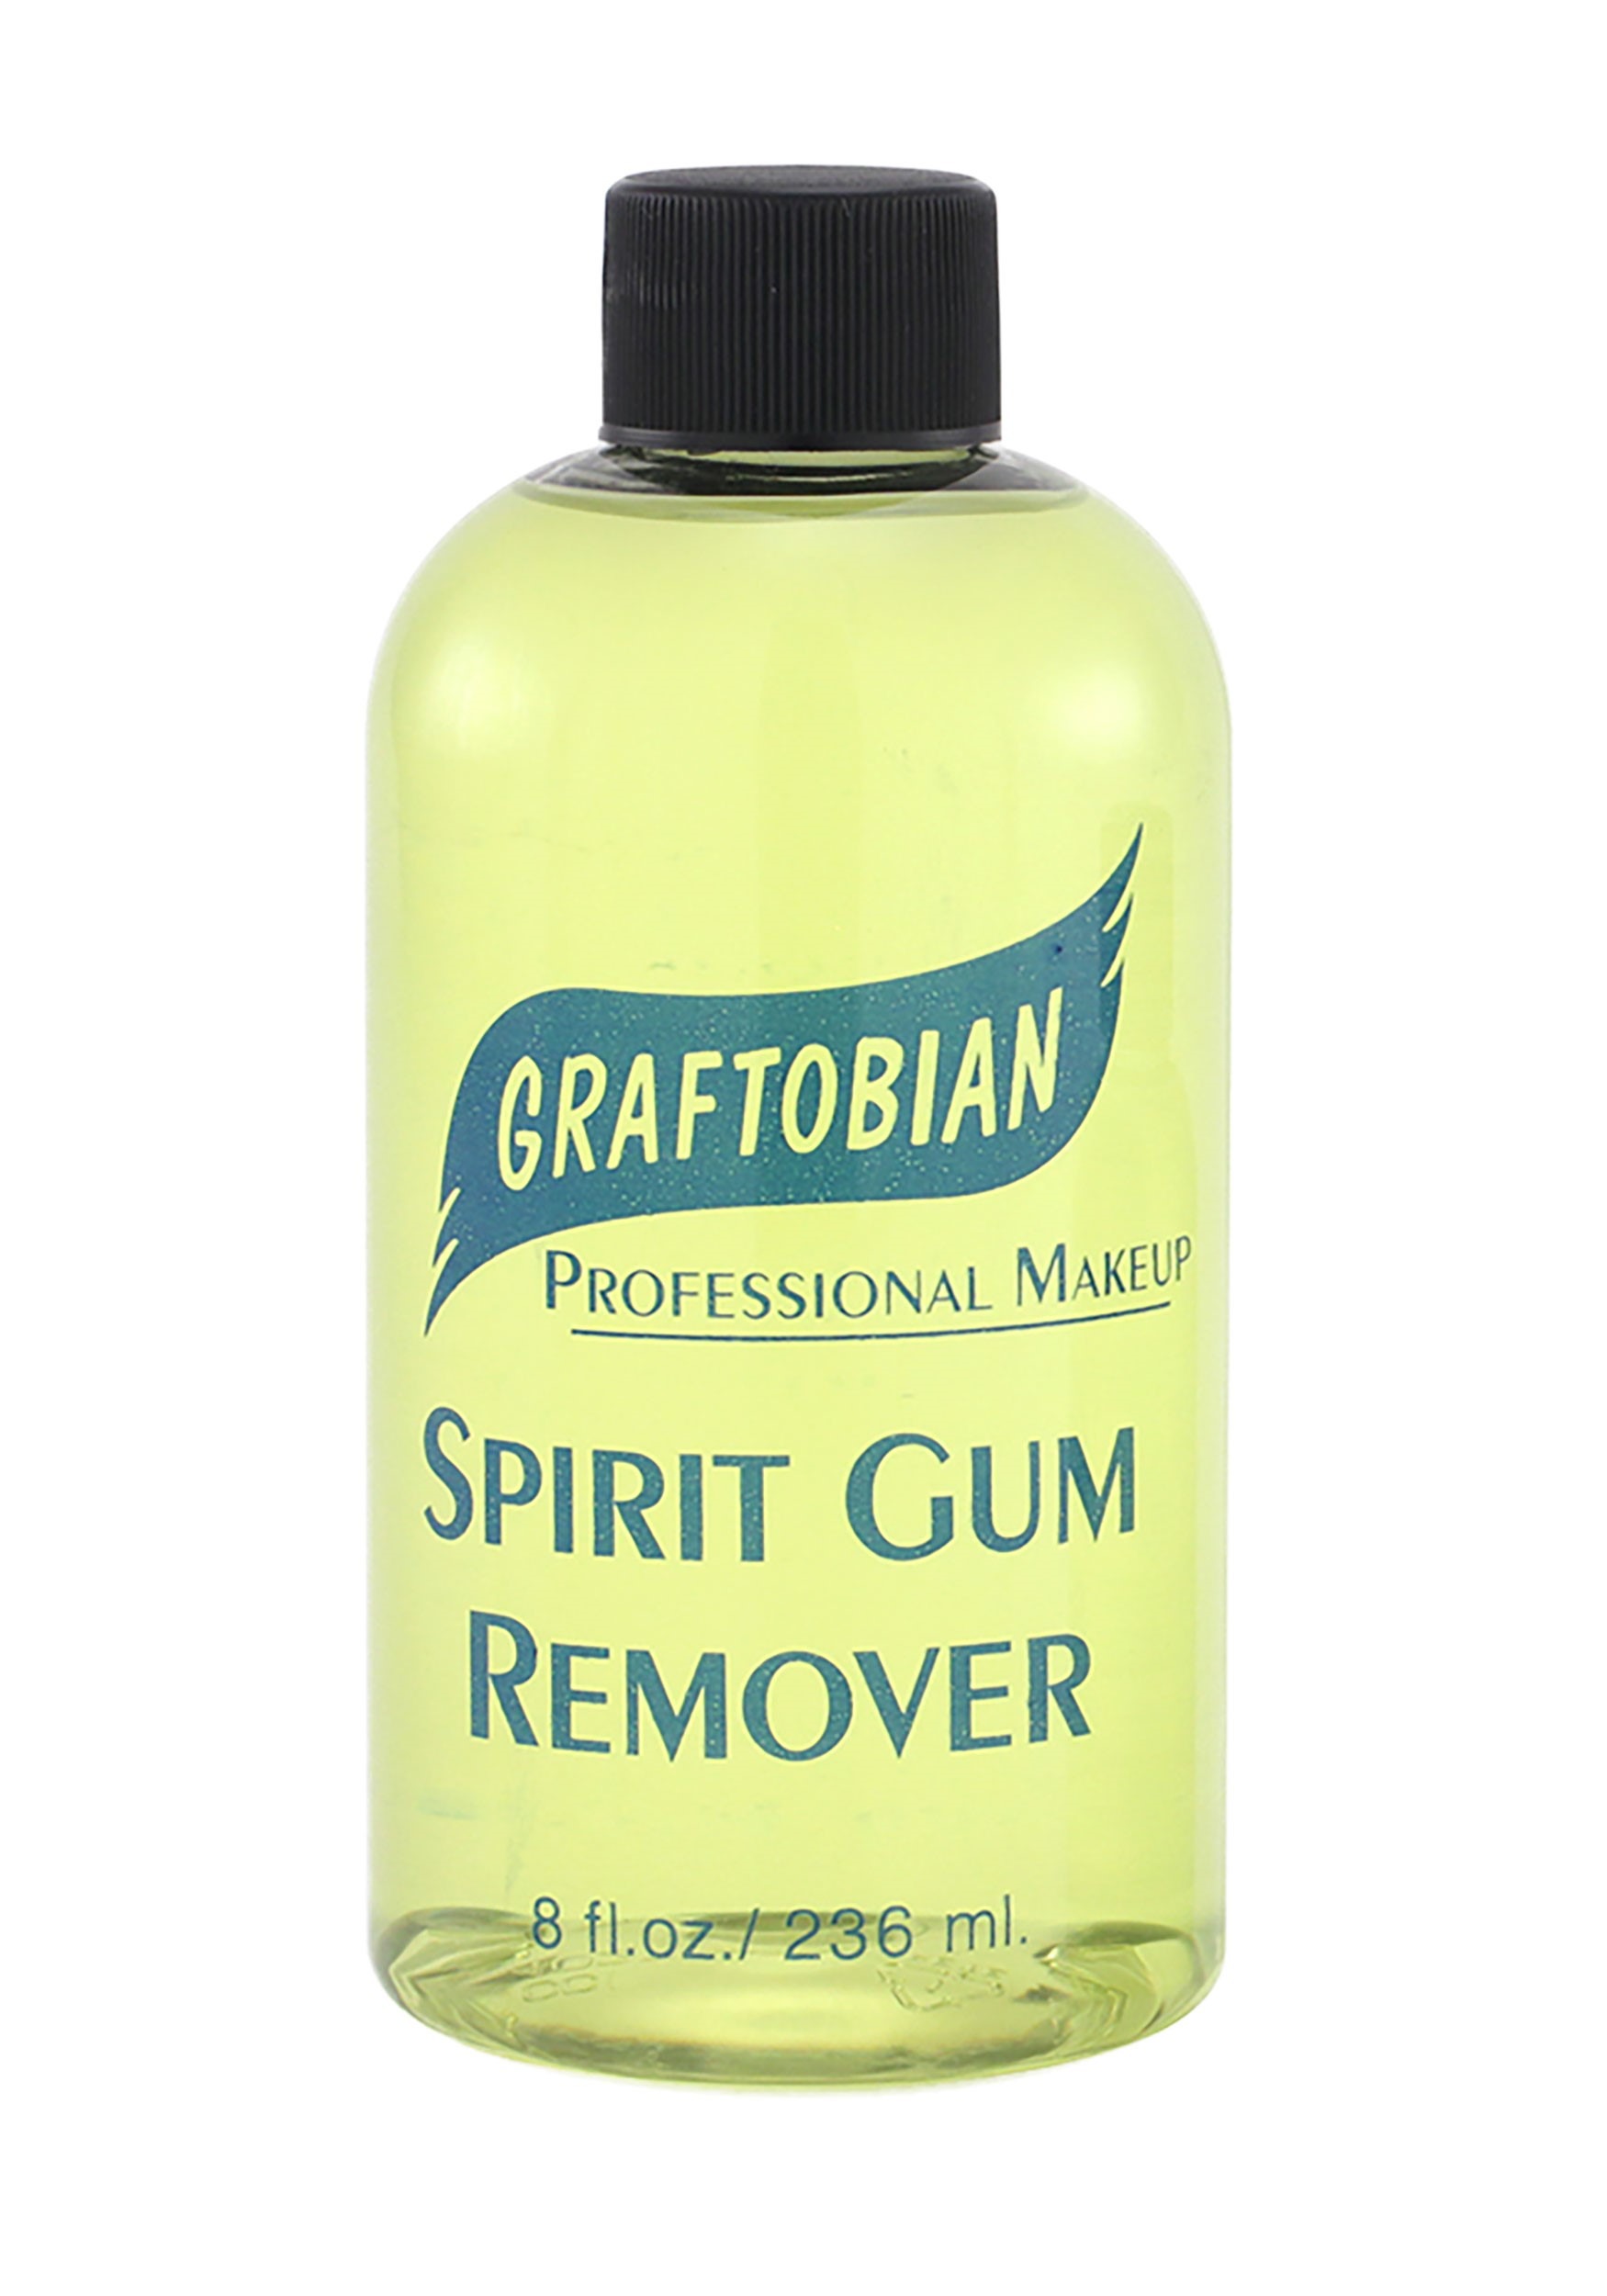 Spirit Gum and Remover